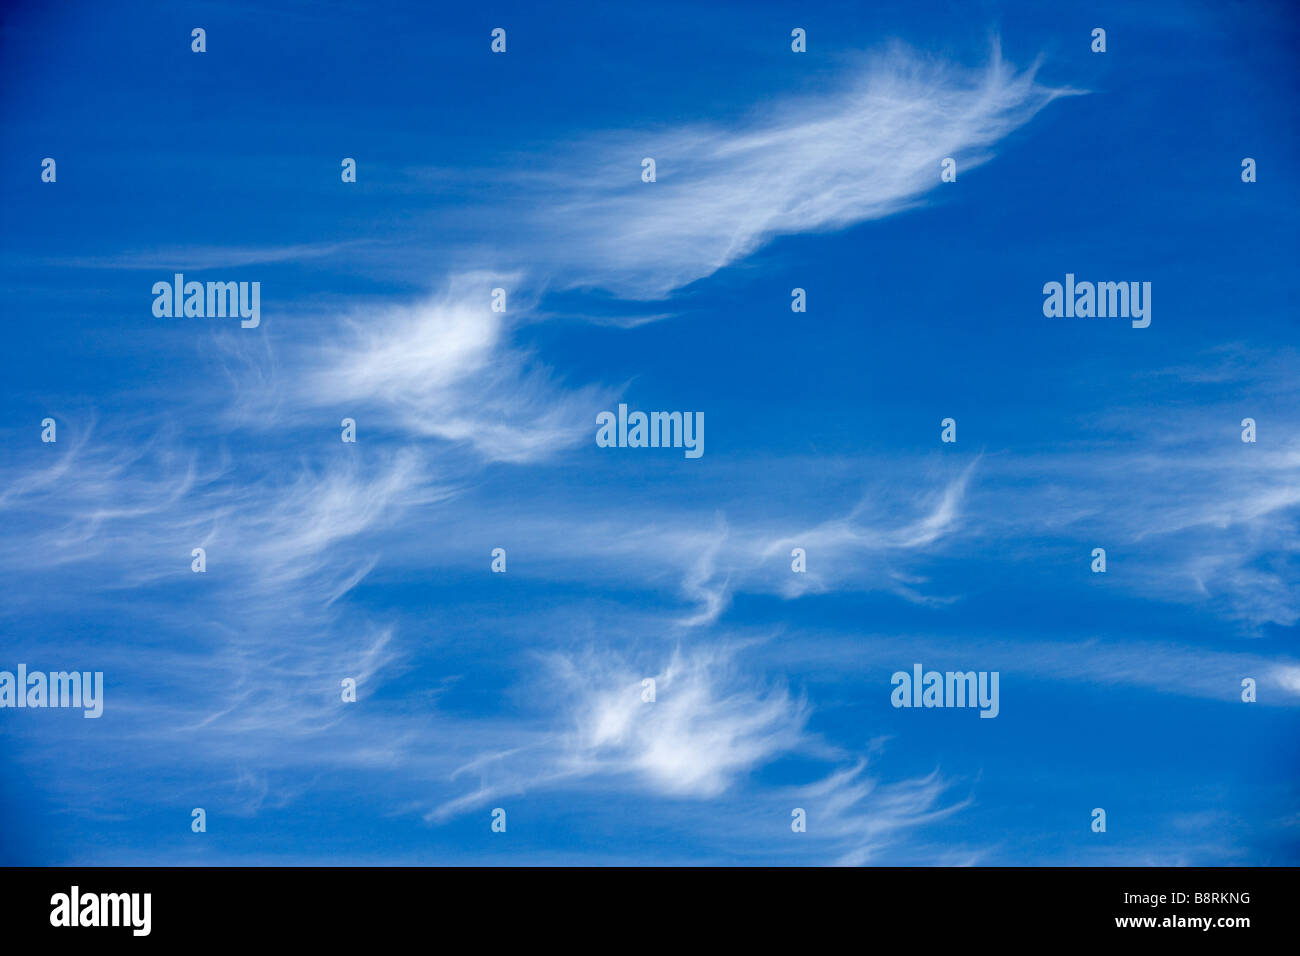 Cirruswolken schweben über einen blauen Himmel. Stockfoto